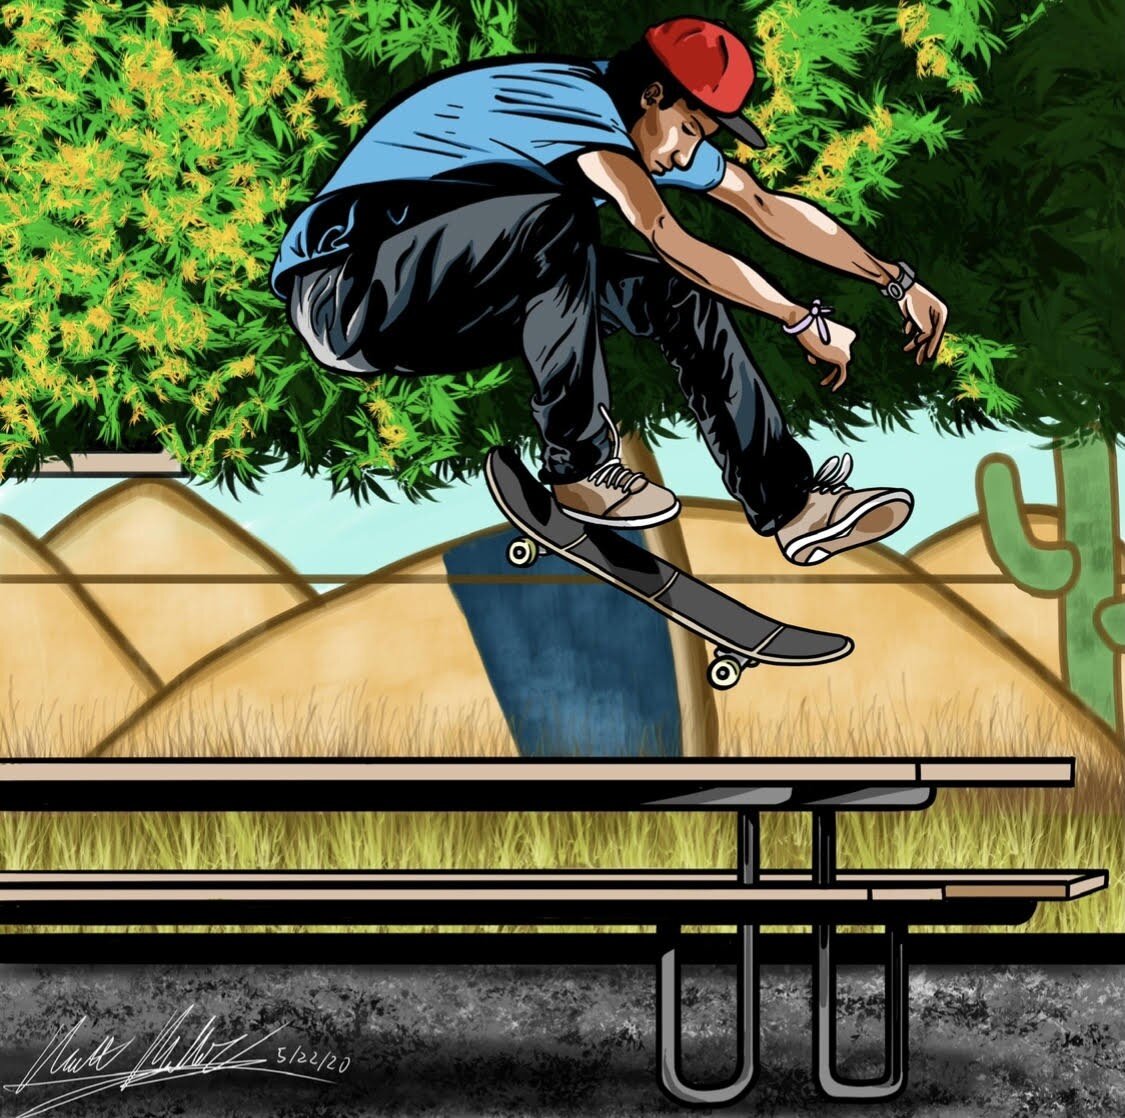 Skateboard ARTboard. Matt Miller Interview.